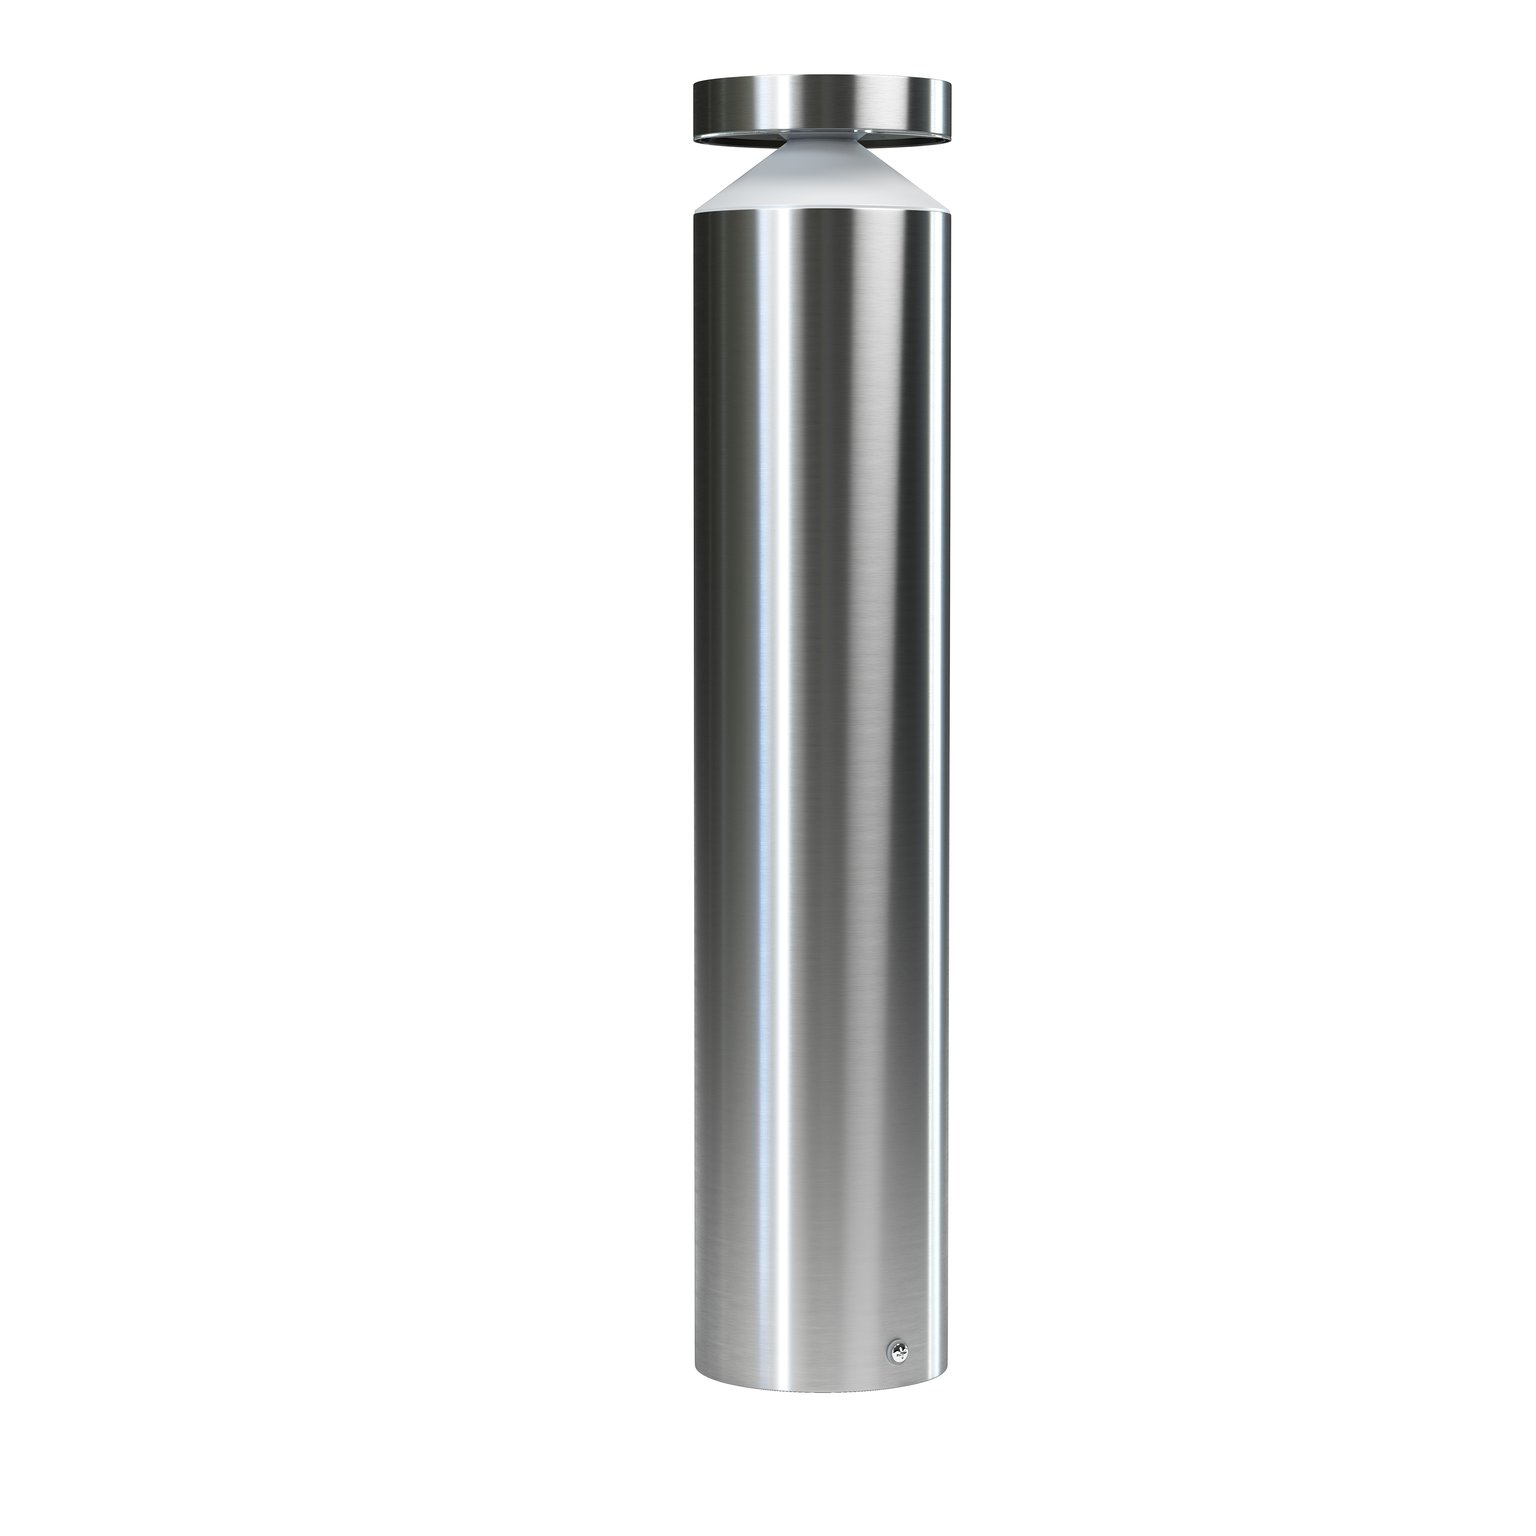 LEDVANCE ENDURA STYLE Cylinder